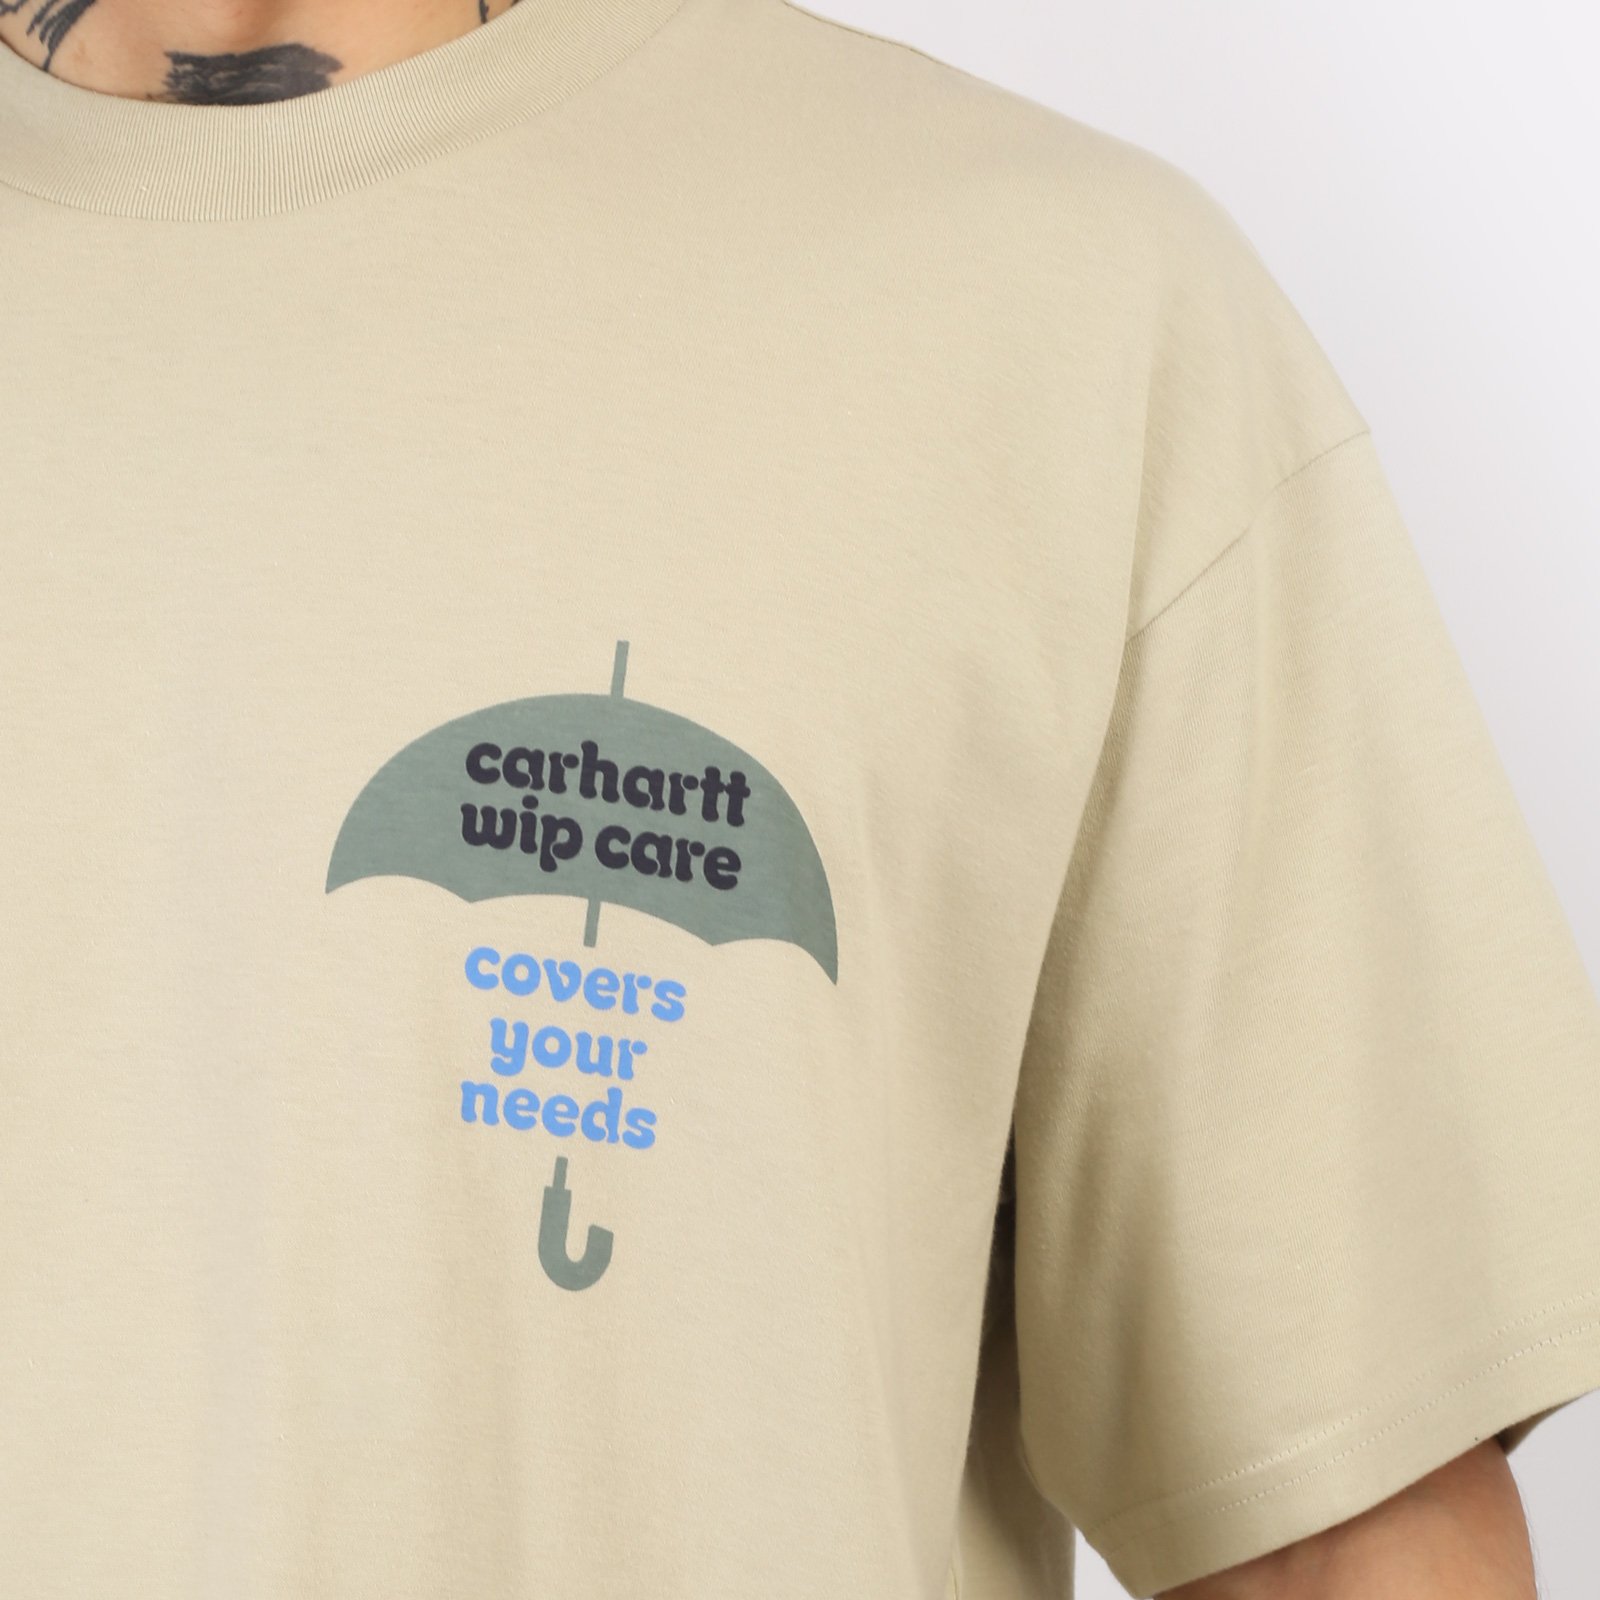 мужская футболка Carhartt WIP S/S Covers T-Shirt  (I033165-beryl)  - цена, описание, фото 5